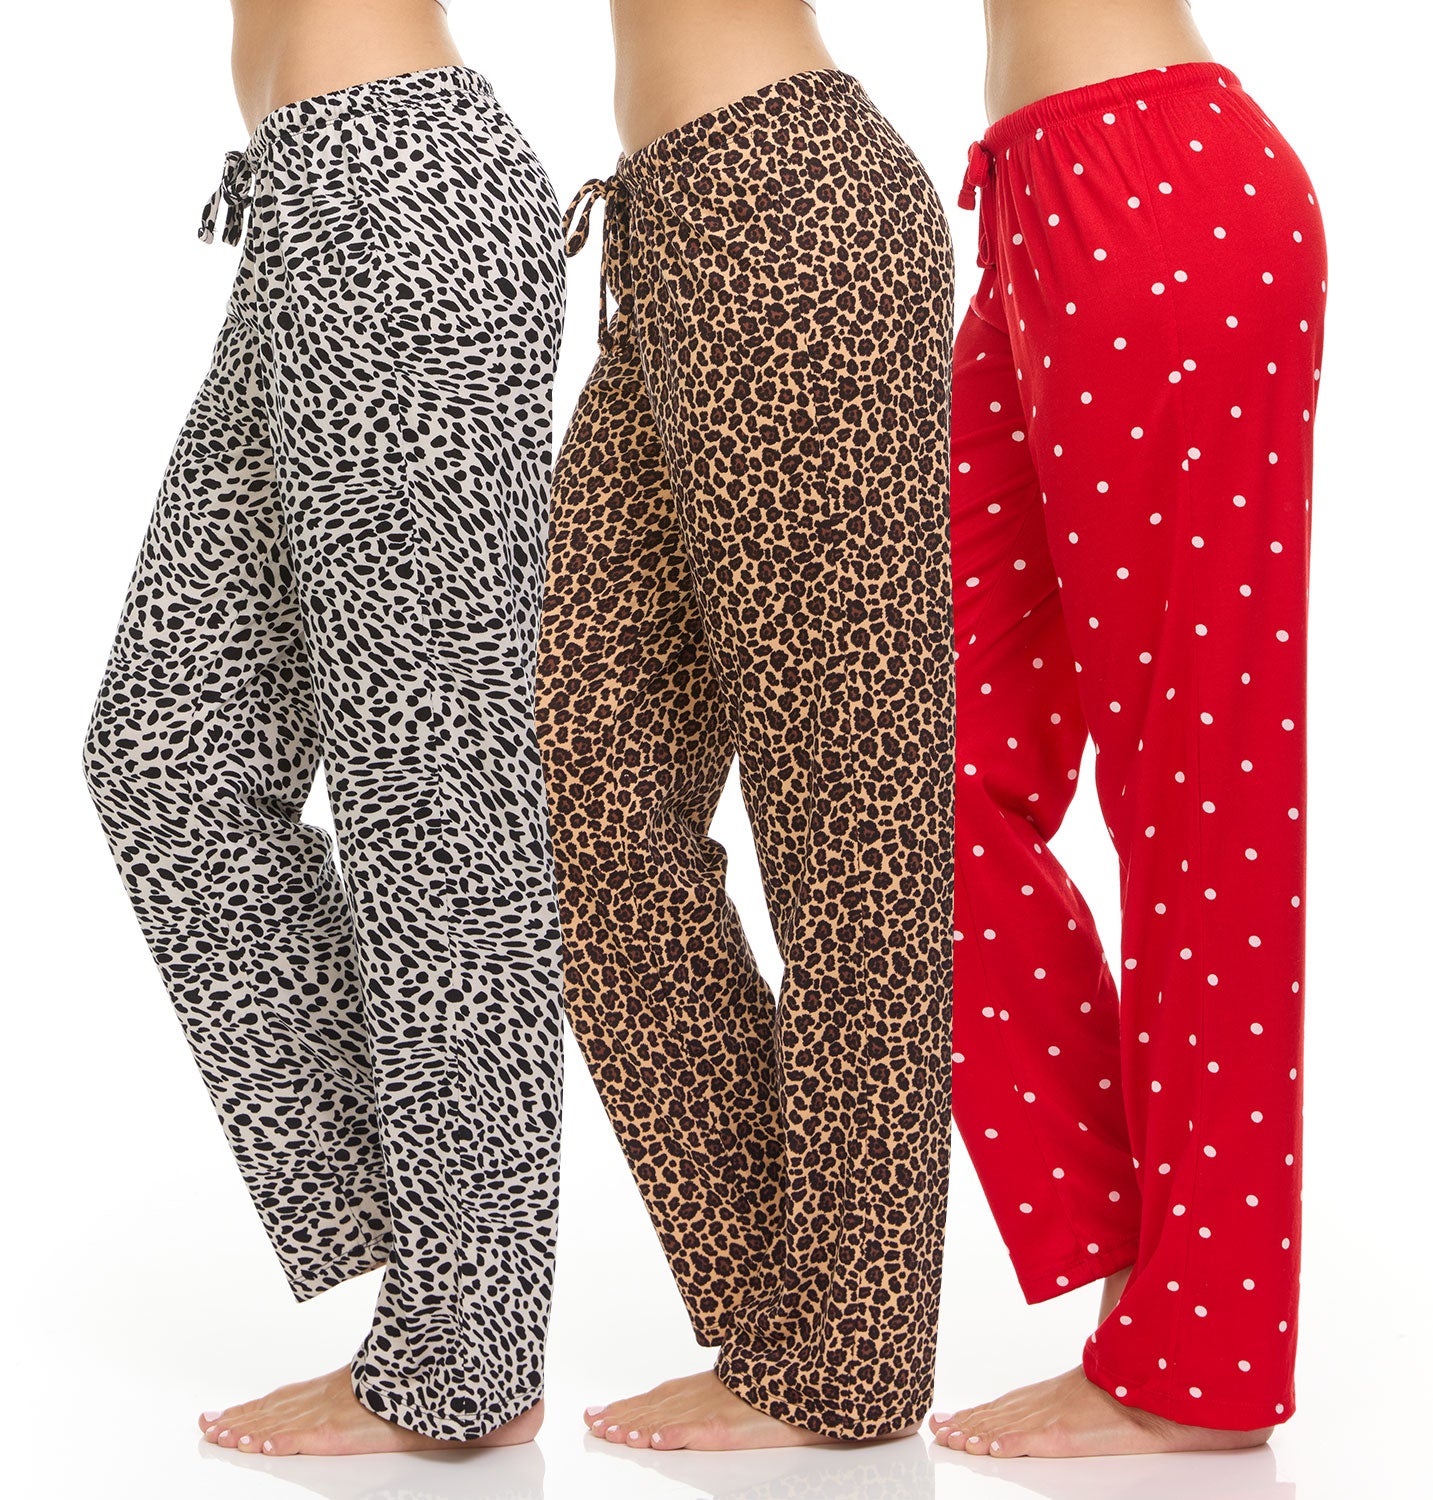 DARESAY 3 Pack: Plaid Pajama Pants For Men – Mens Flannel Pajama